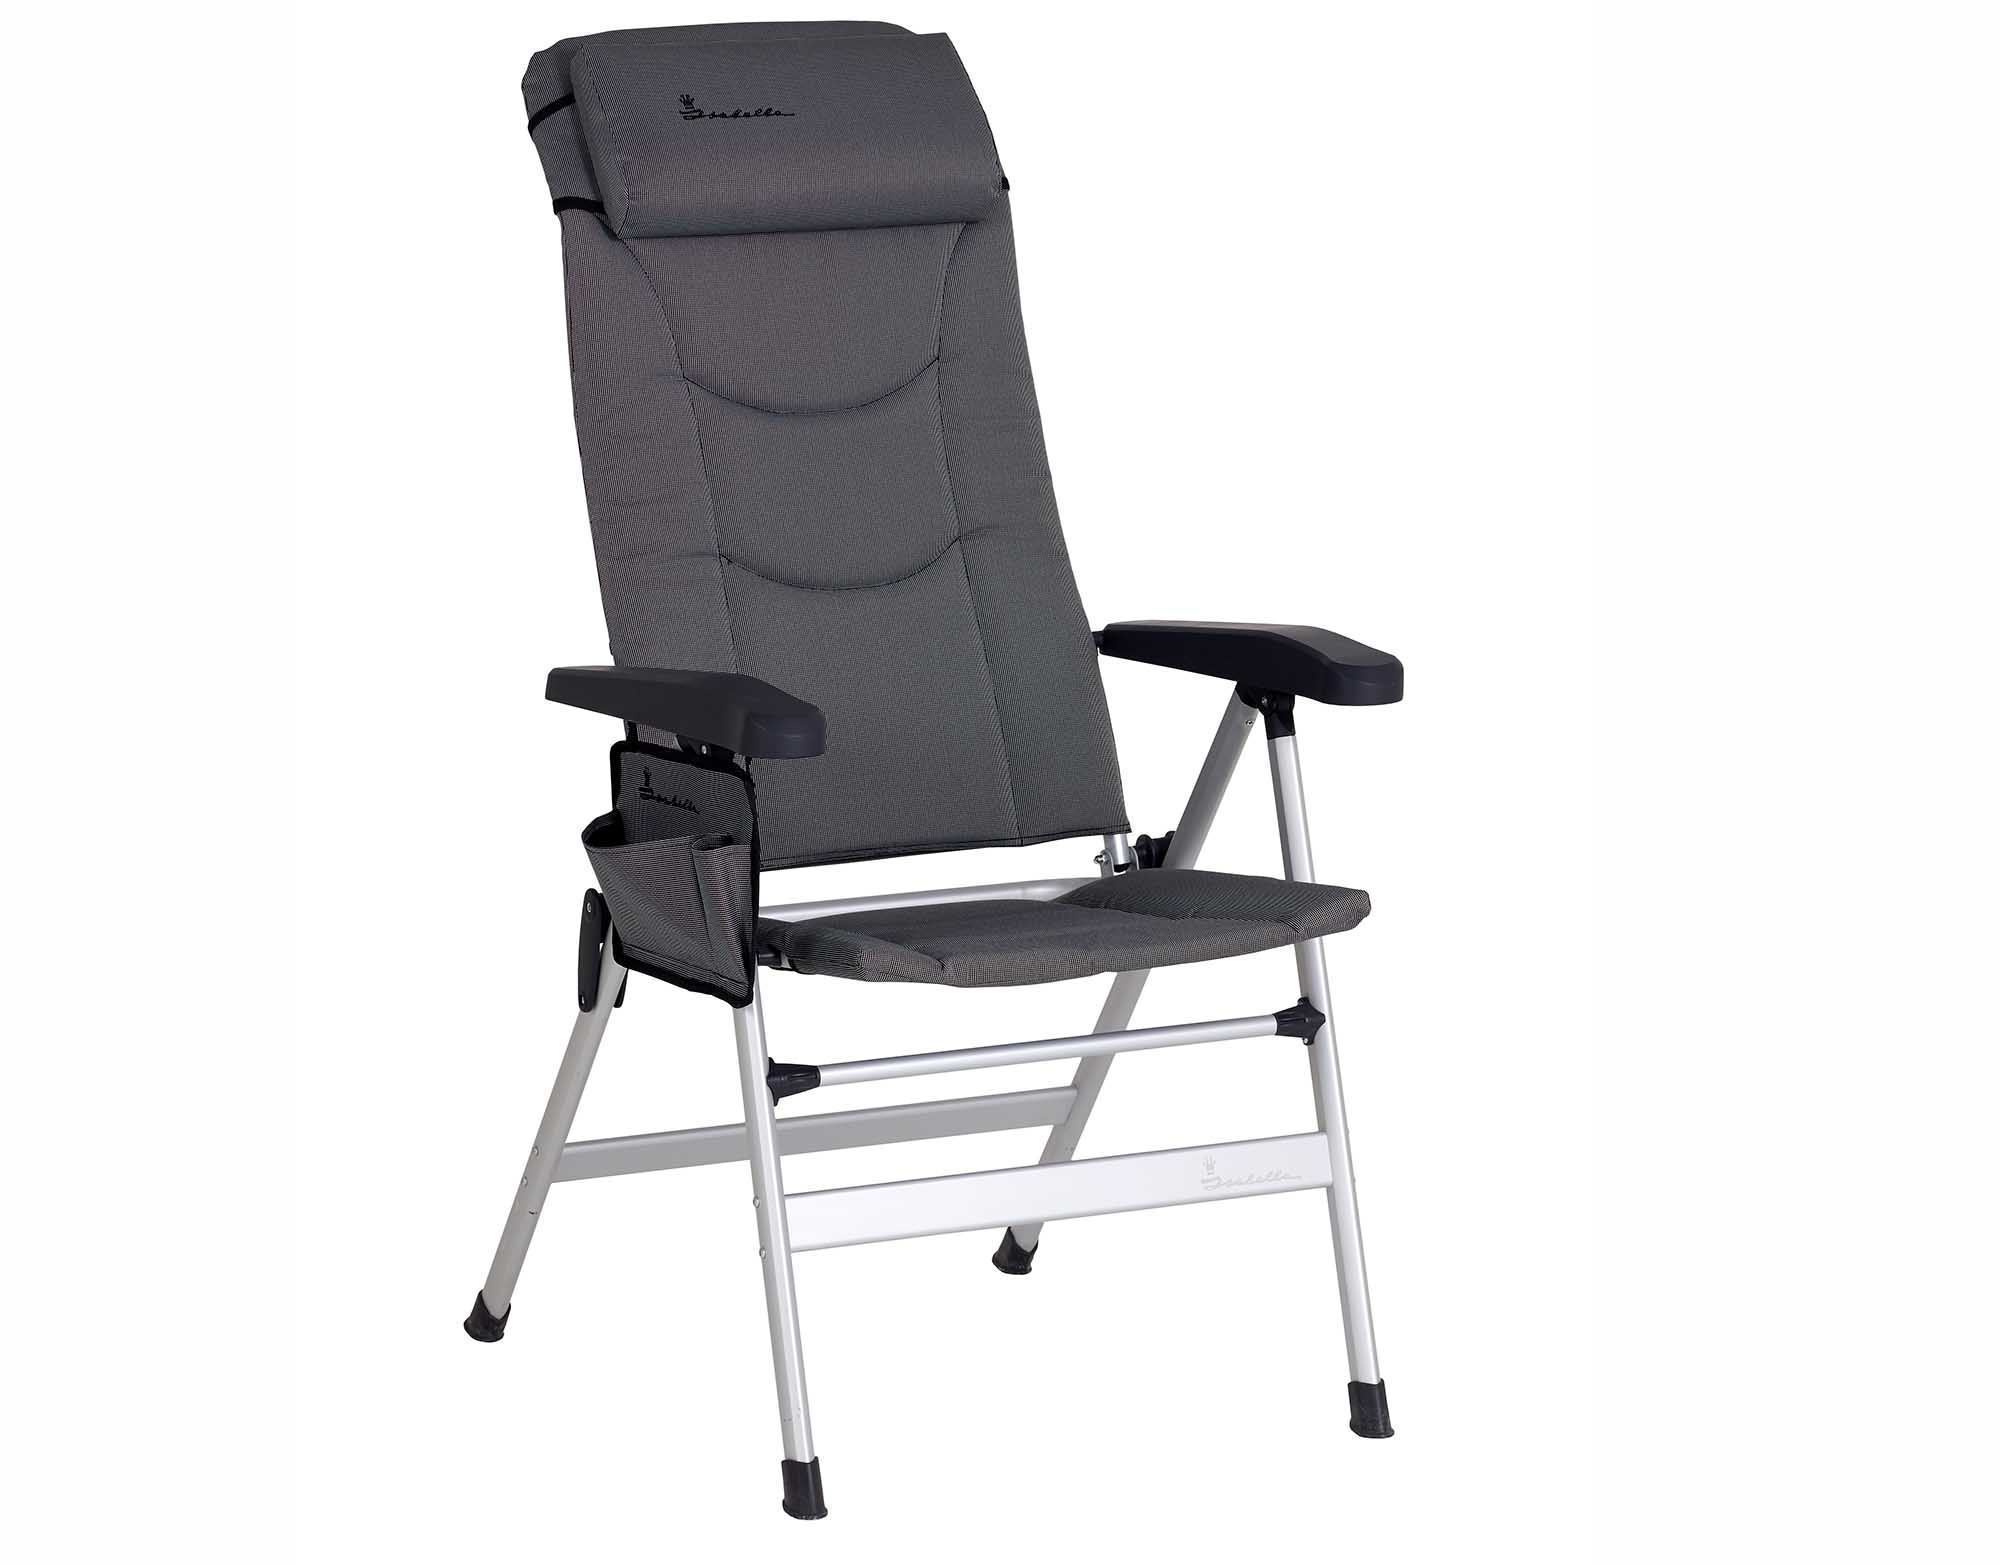 Isabella campingstol med 8 positioner inkl. nakkepude. * Alu-stel * Materiale: lys grå polyweave (60% PVC Polyester) * Vægt: kg Belastning: 120 kg. *